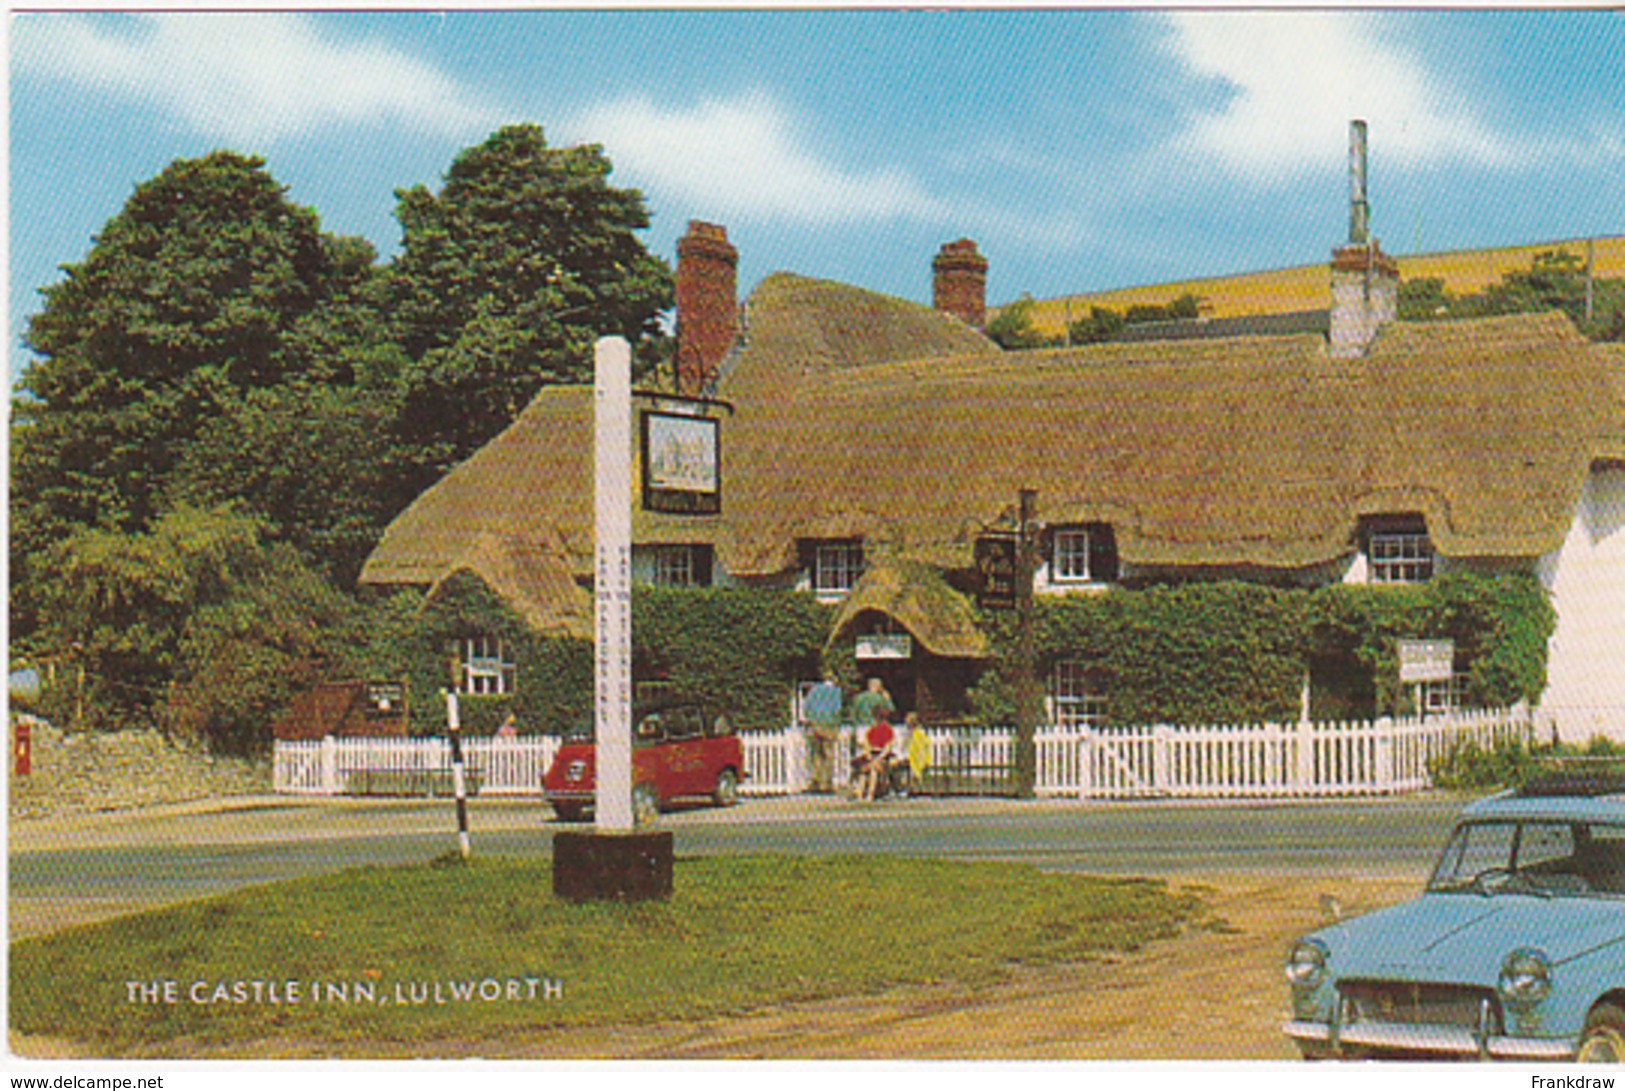 Postcard - The Castle Inn, Lulworth - Card No. 1-54-06-02 - VG - Sin Clasificación